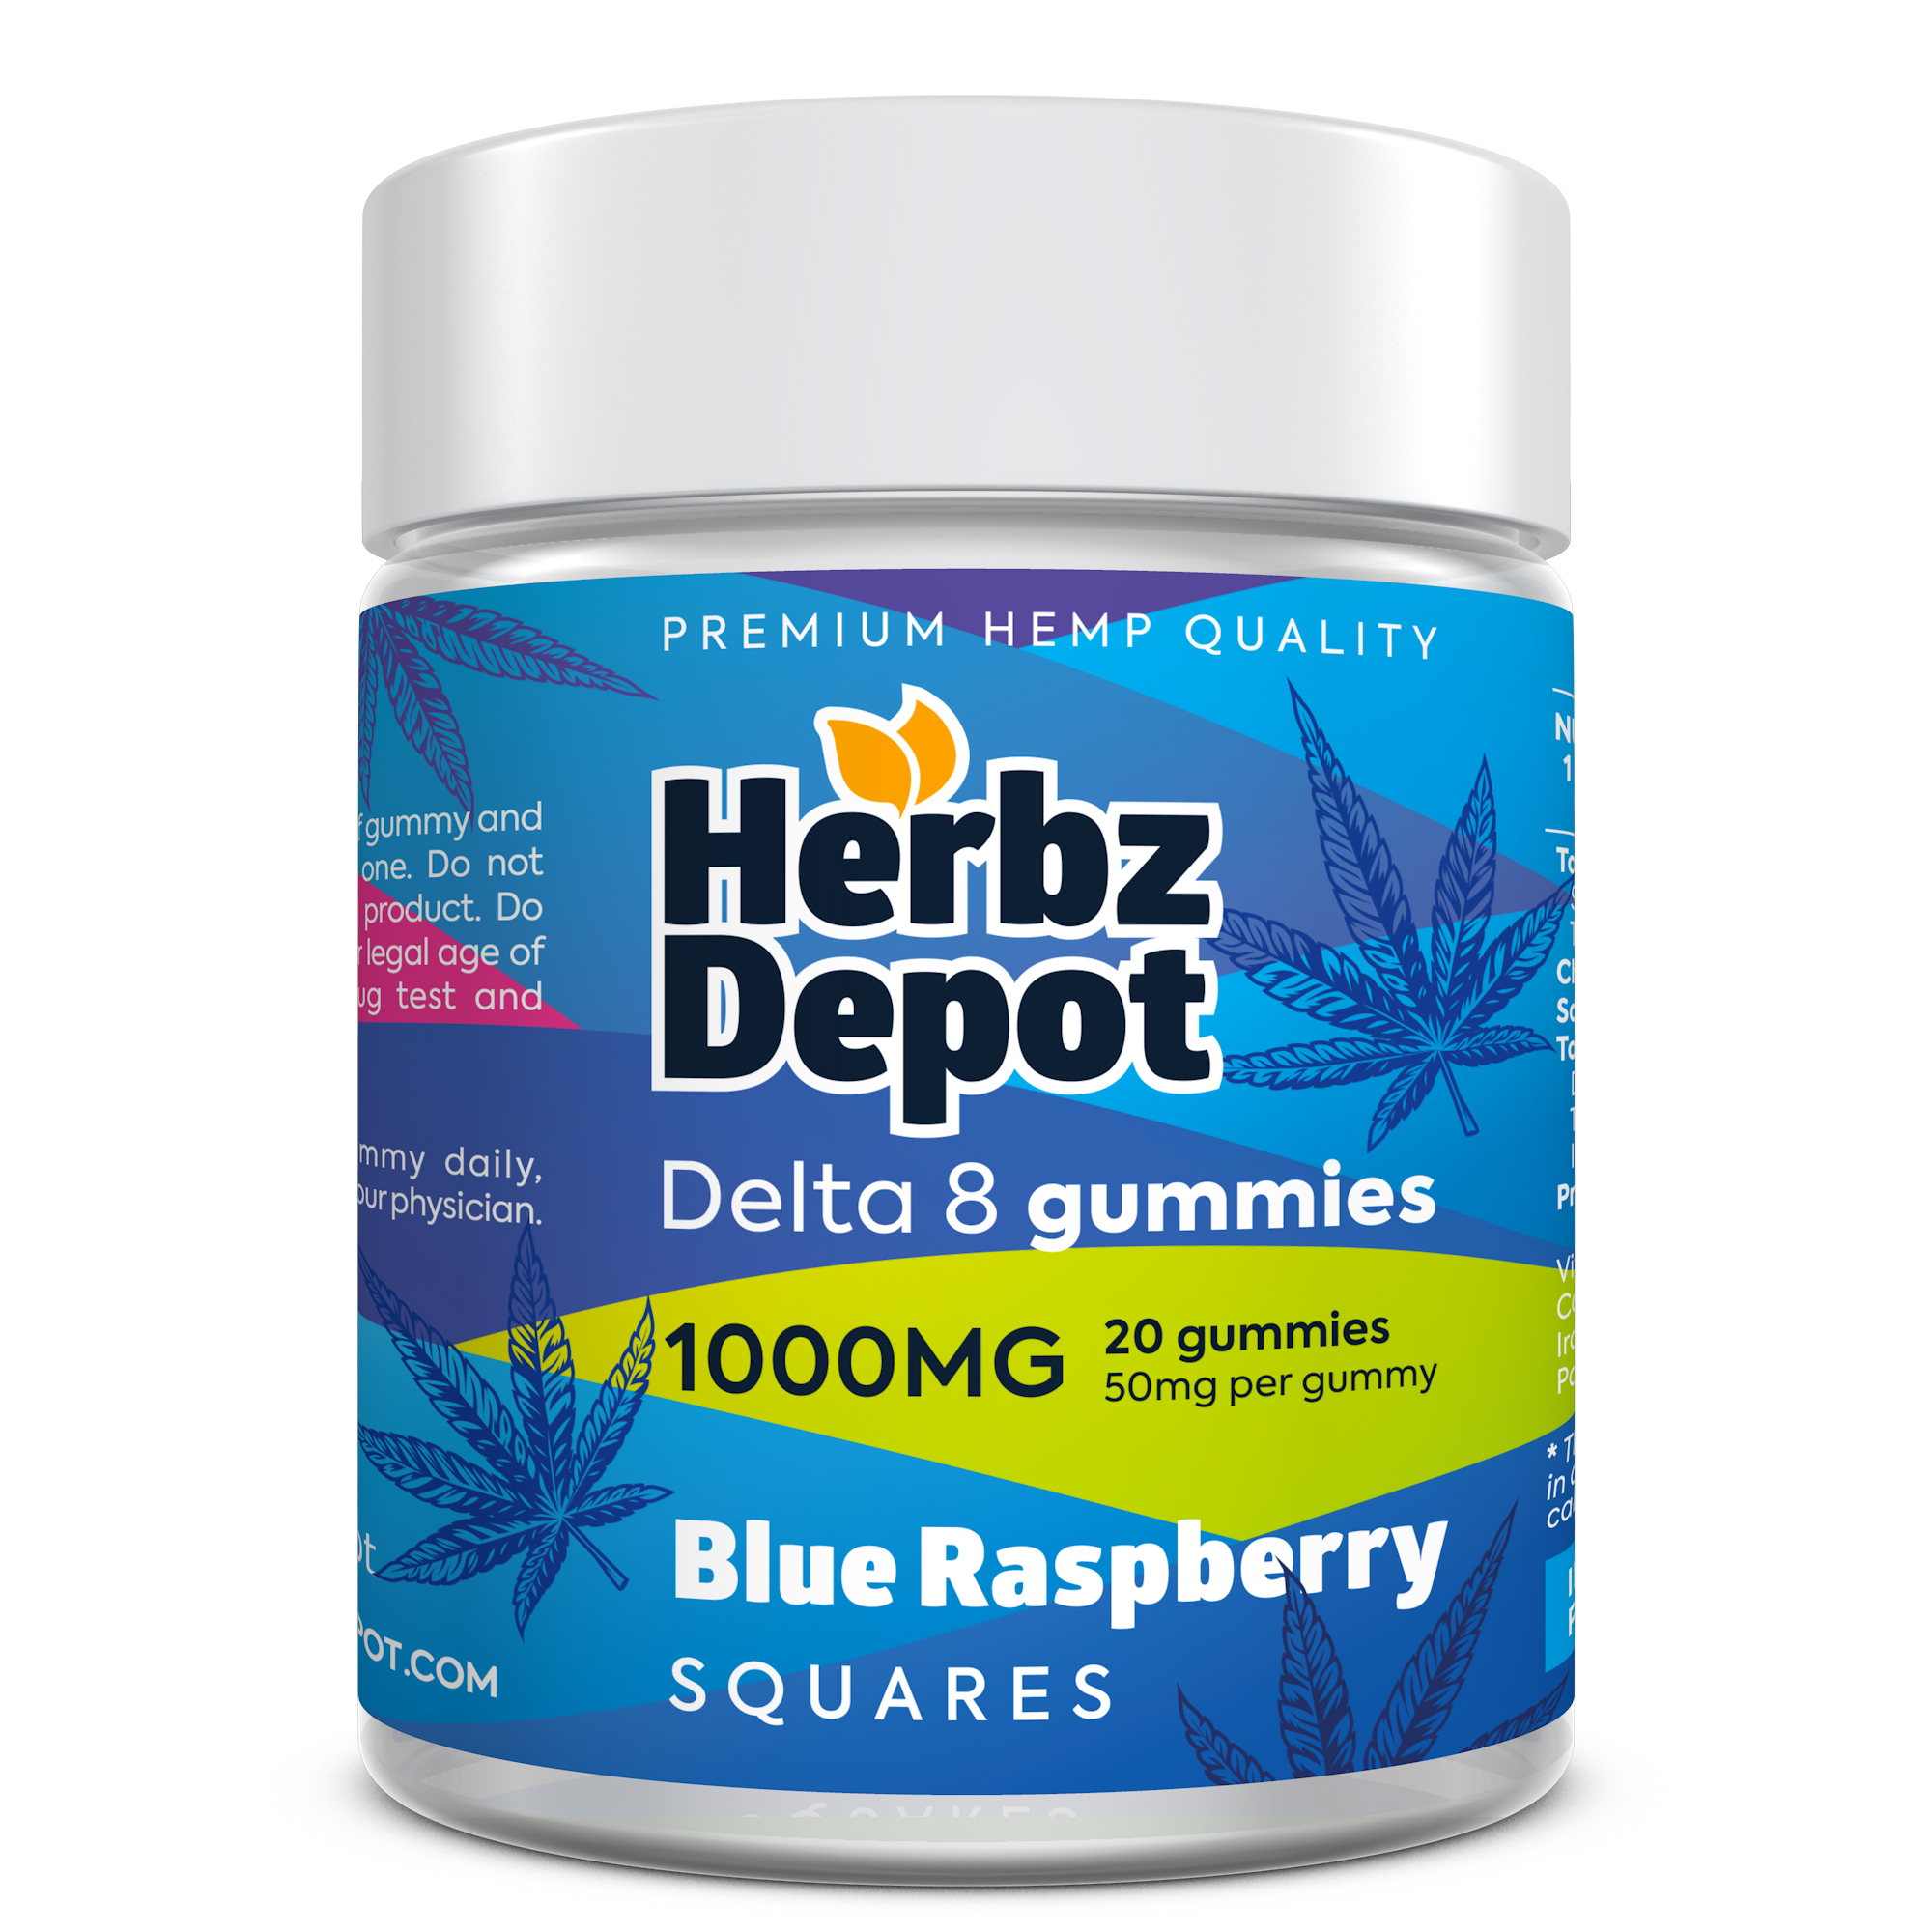 Blue Raspberry best delta 8 gummies